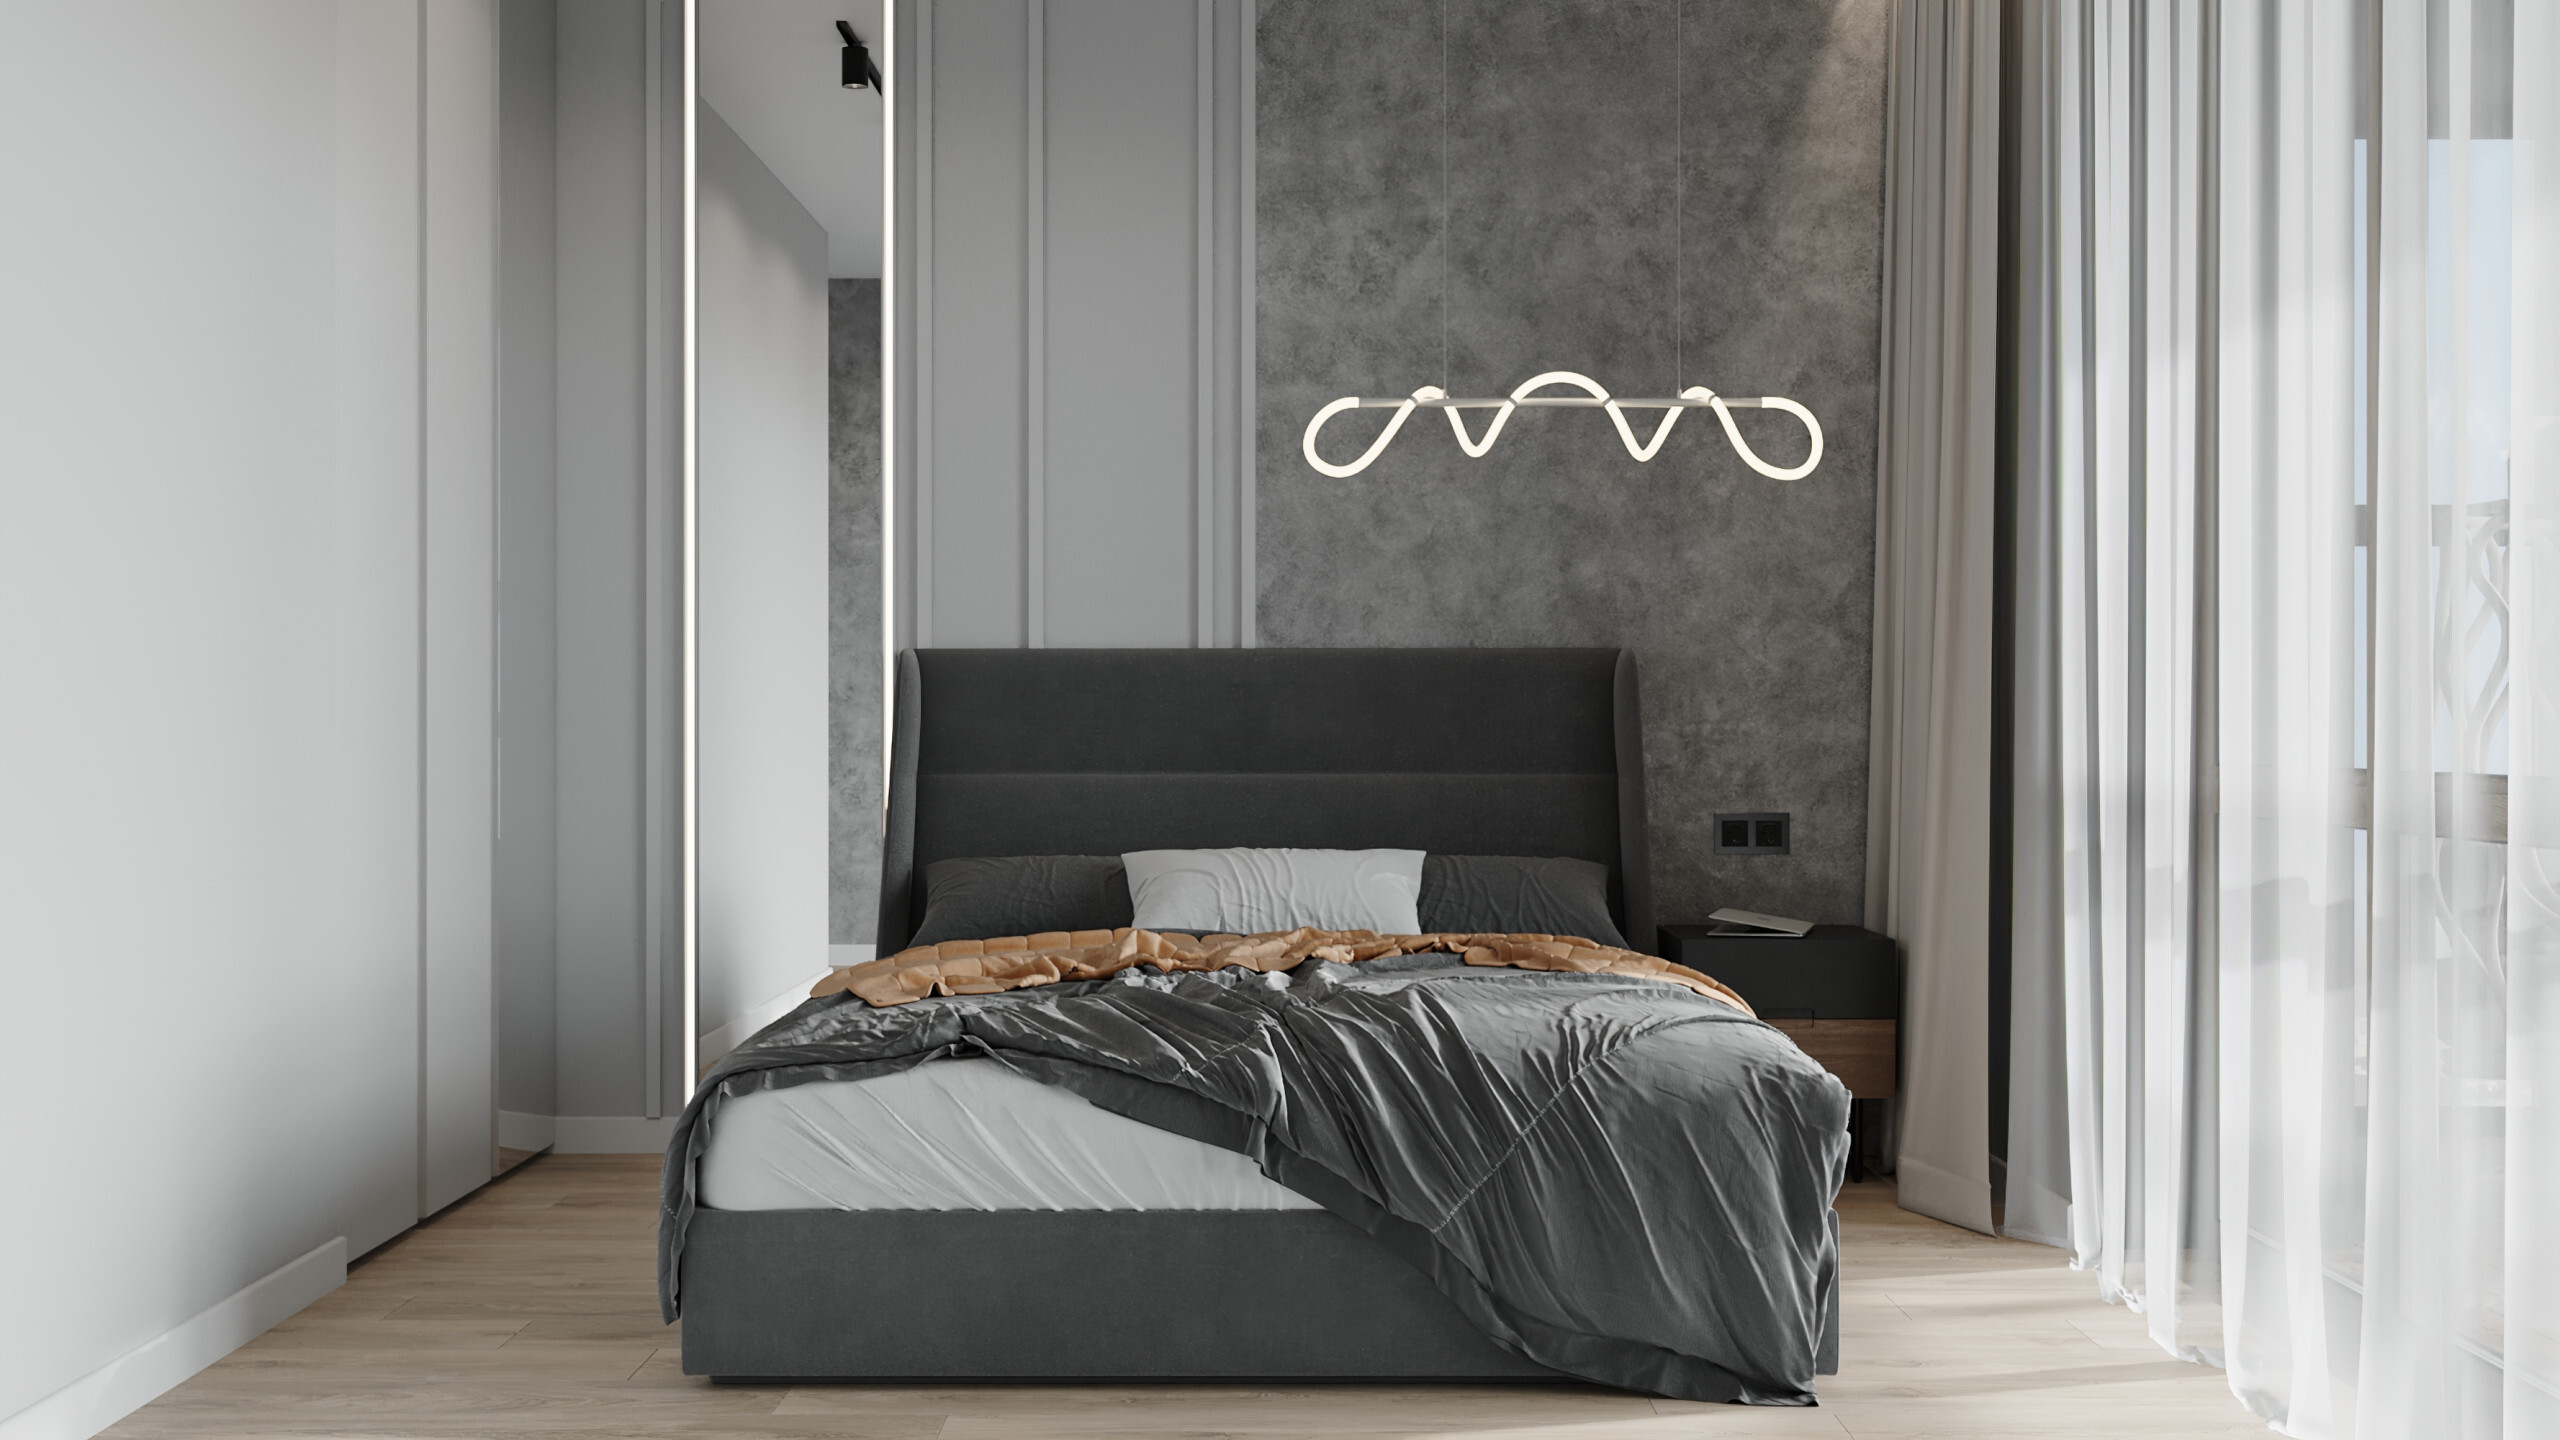 Интерьер спальни cветовыми линиями, бра над кроватью и светильниками над кроватью в современном стиле